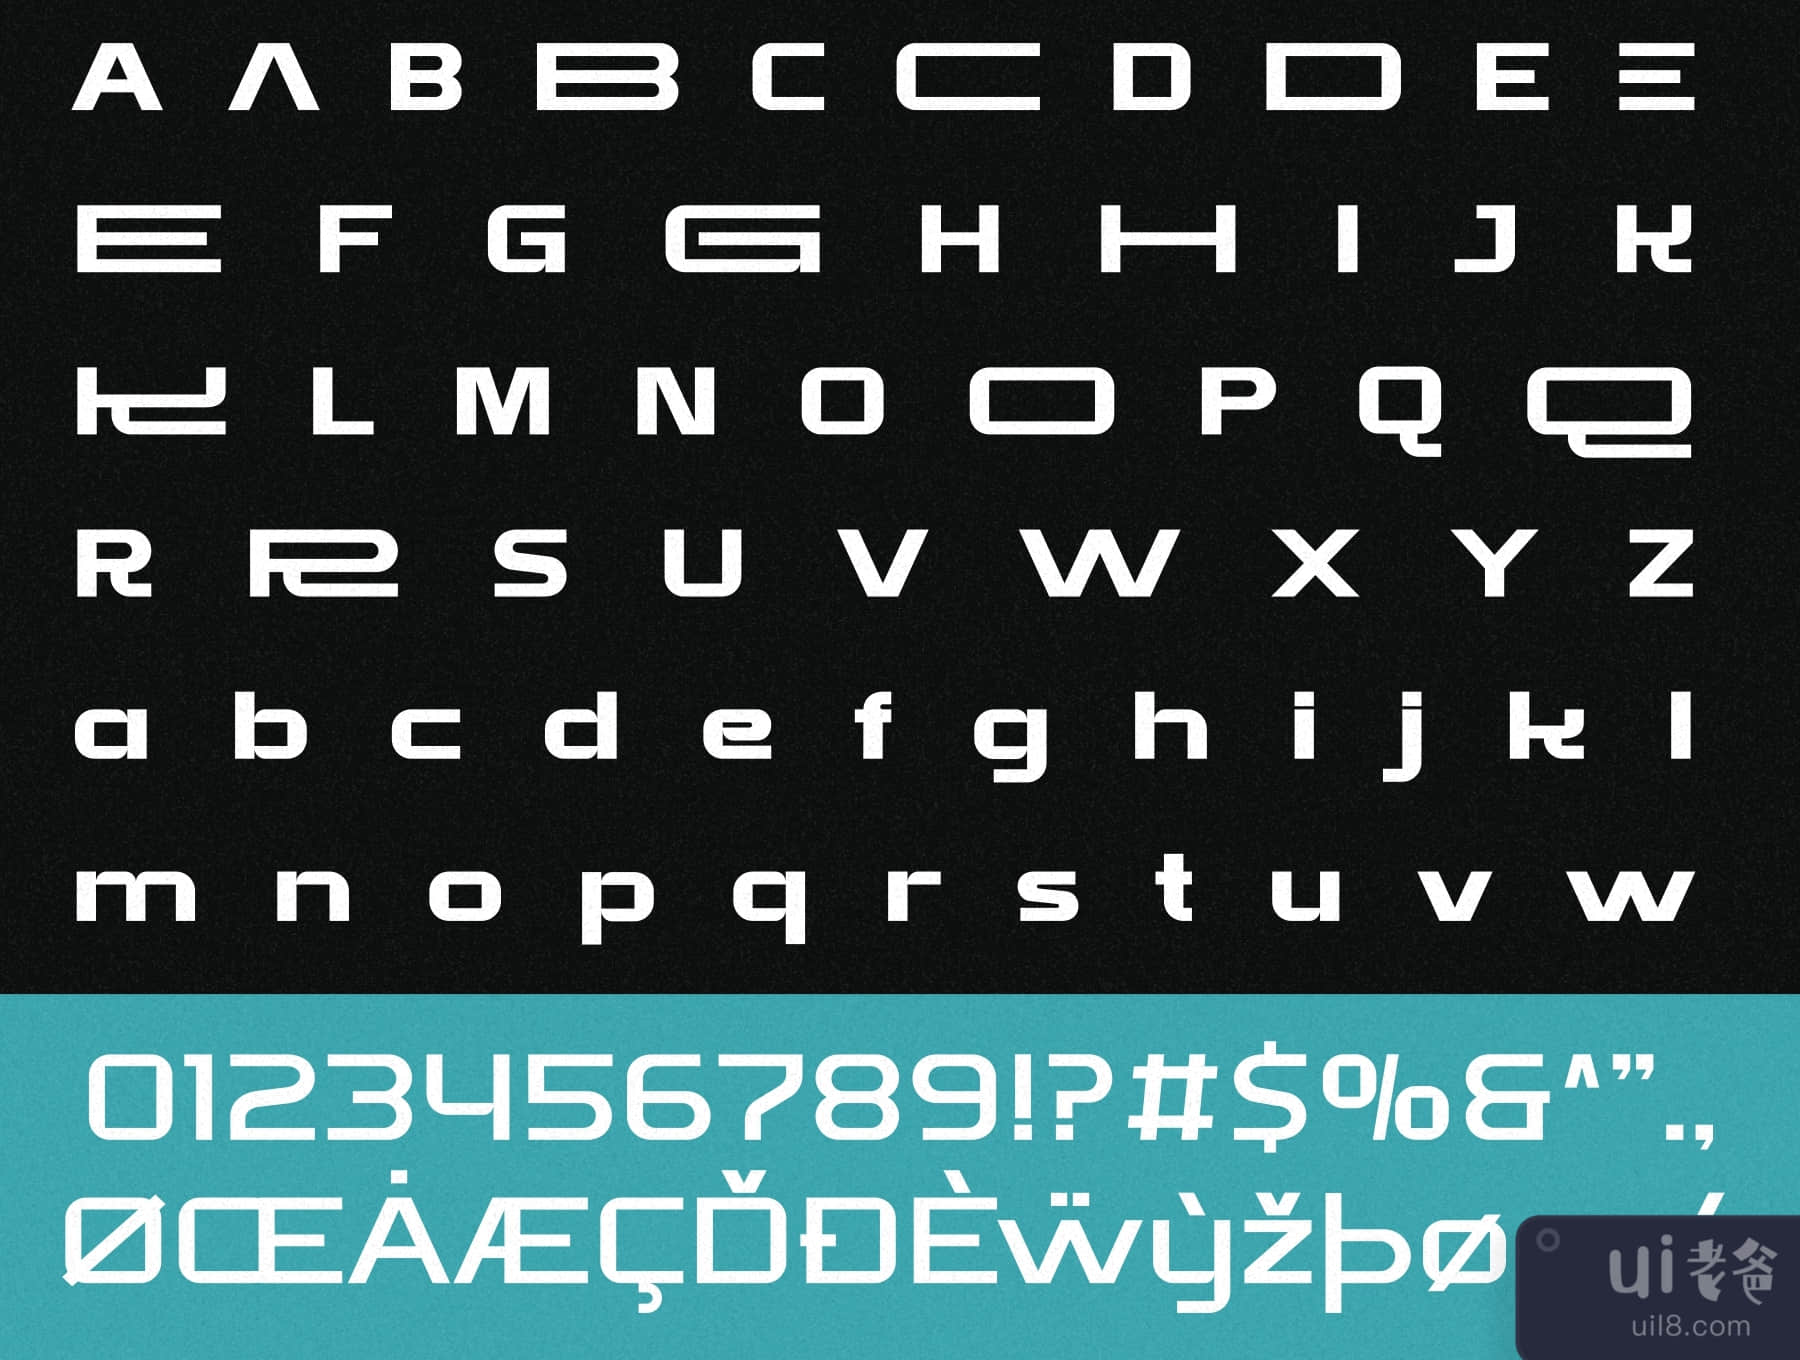 孟加拉语 - 家庭显示字体 (Brate - Family Display Typeface)插图6